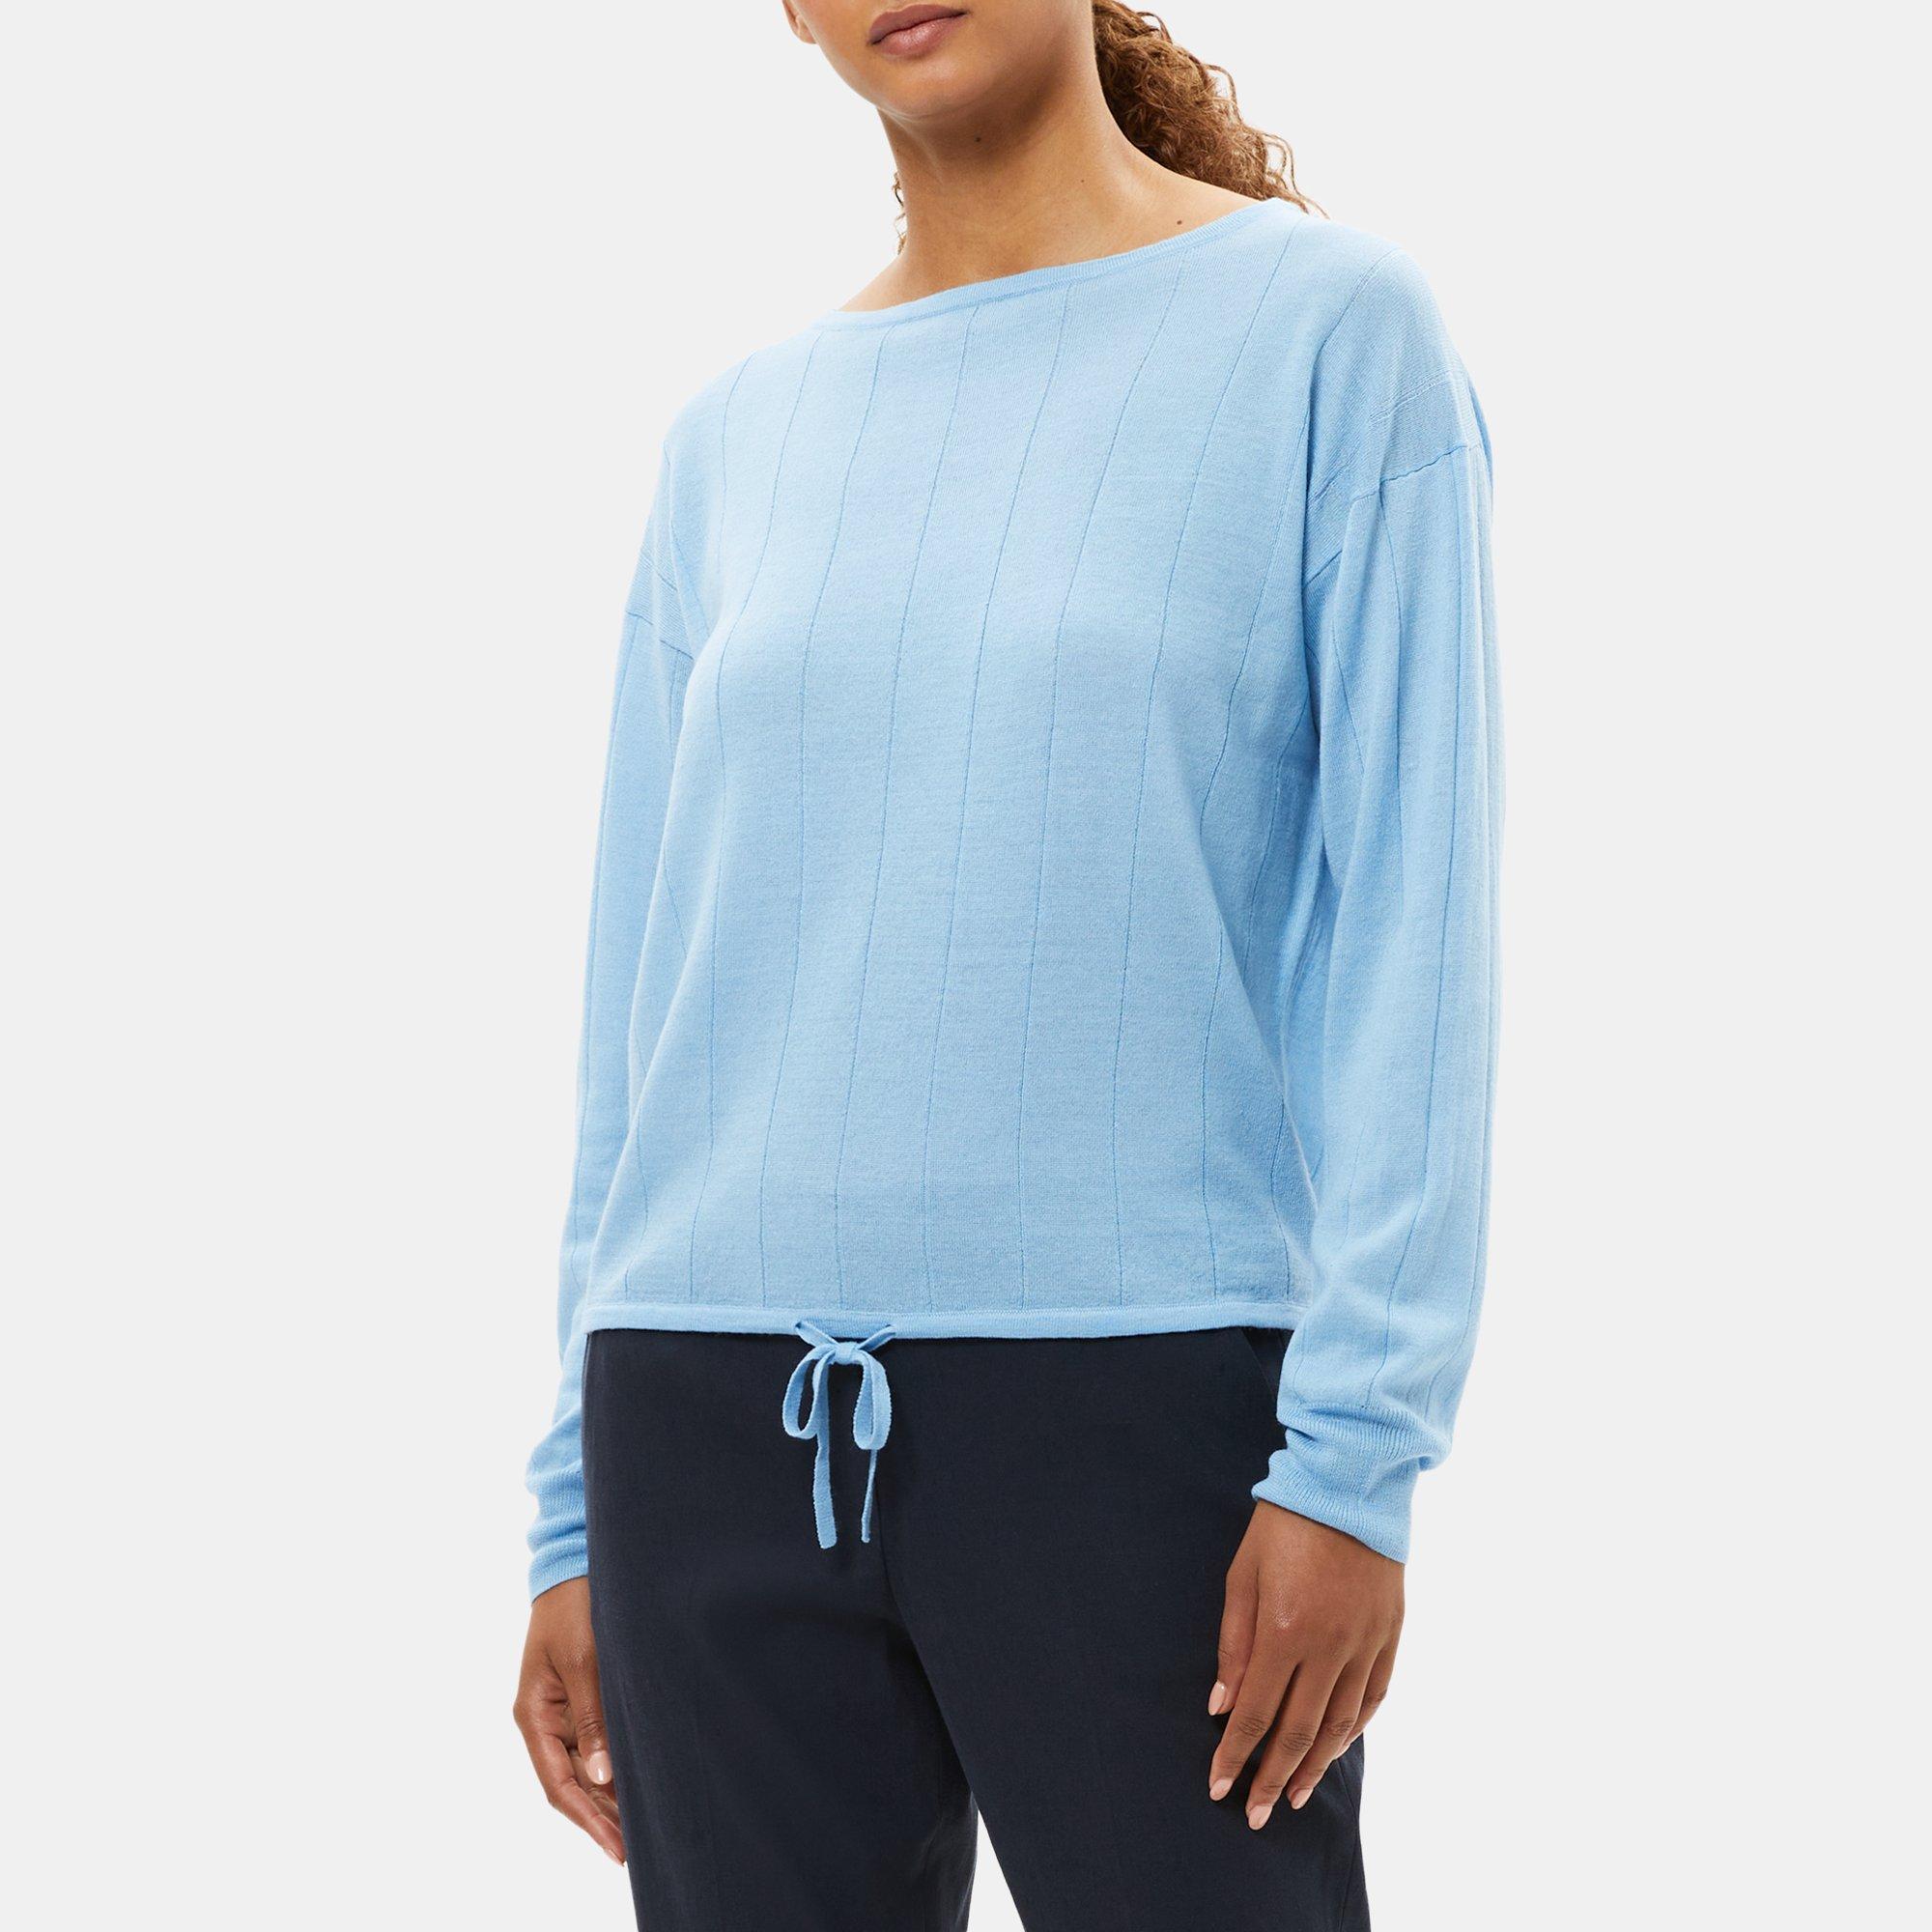 띠어리 니트탑 Theory Drawstring Sweater in Wool-Linen,OASIS